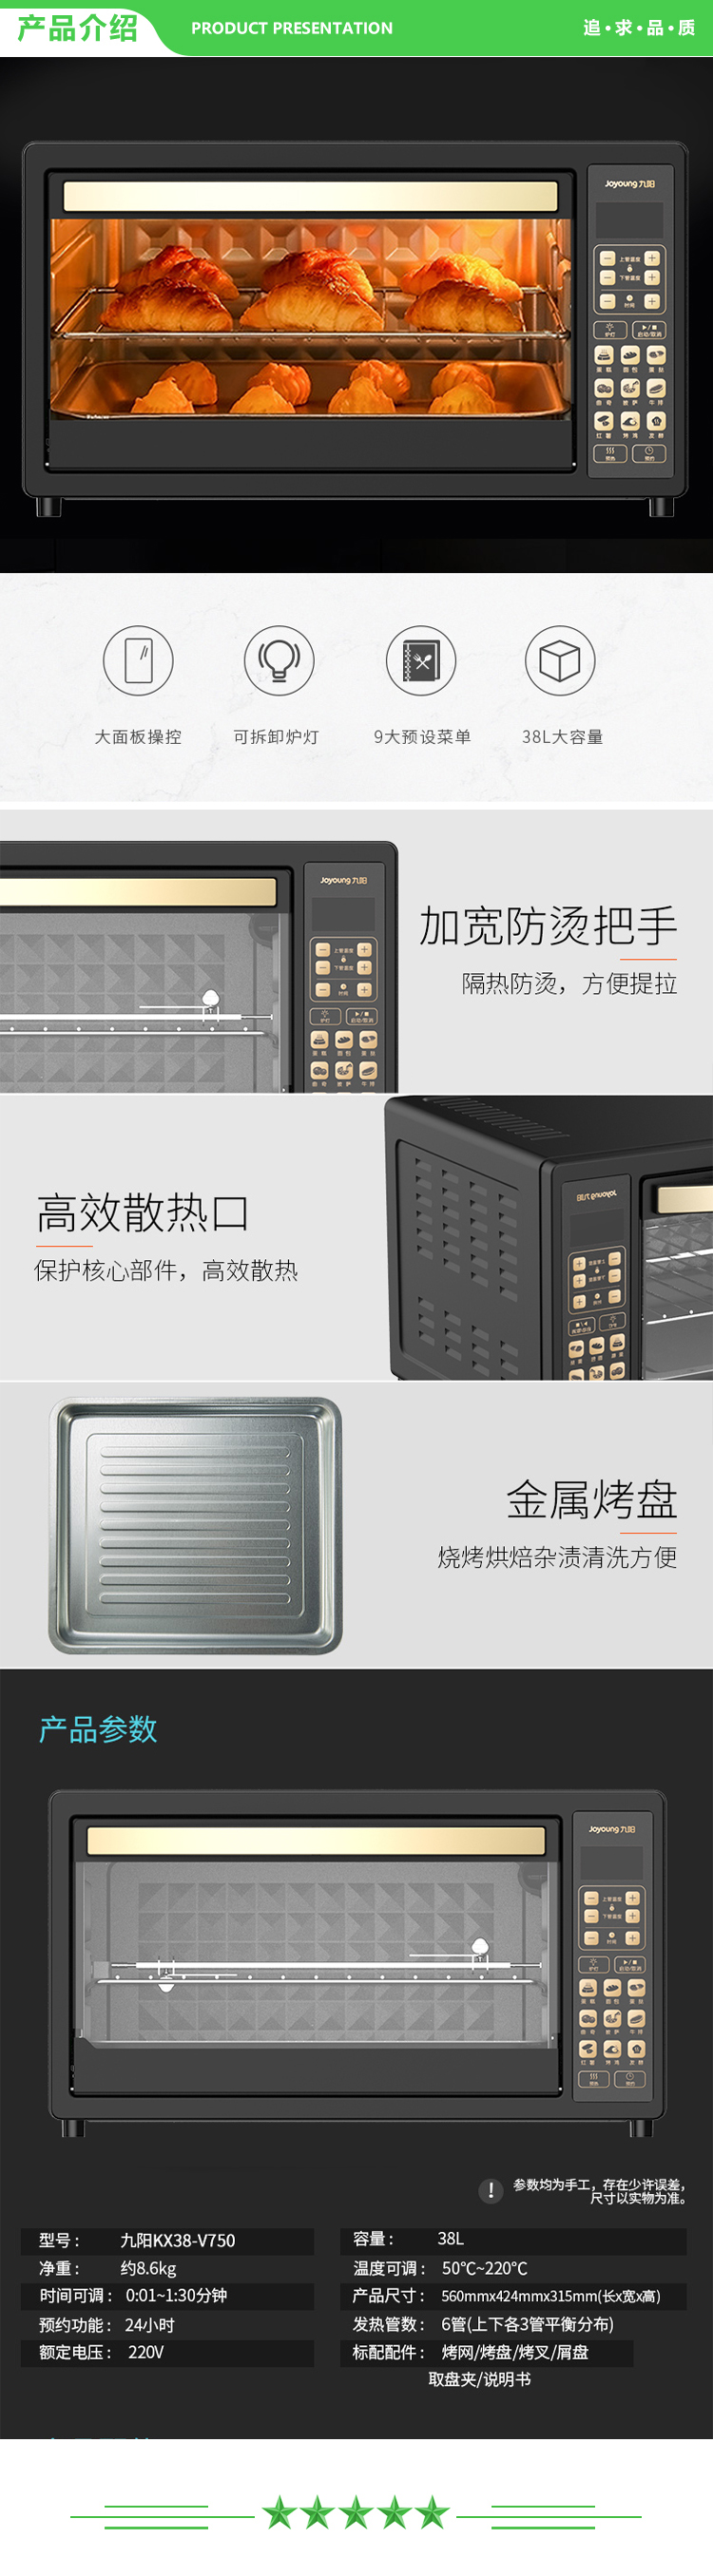 九阳 Joyoung KX38-V750 电烤箱家用多功能电烤箱烘焙蛋糕38L独立控温 黑色.jpg